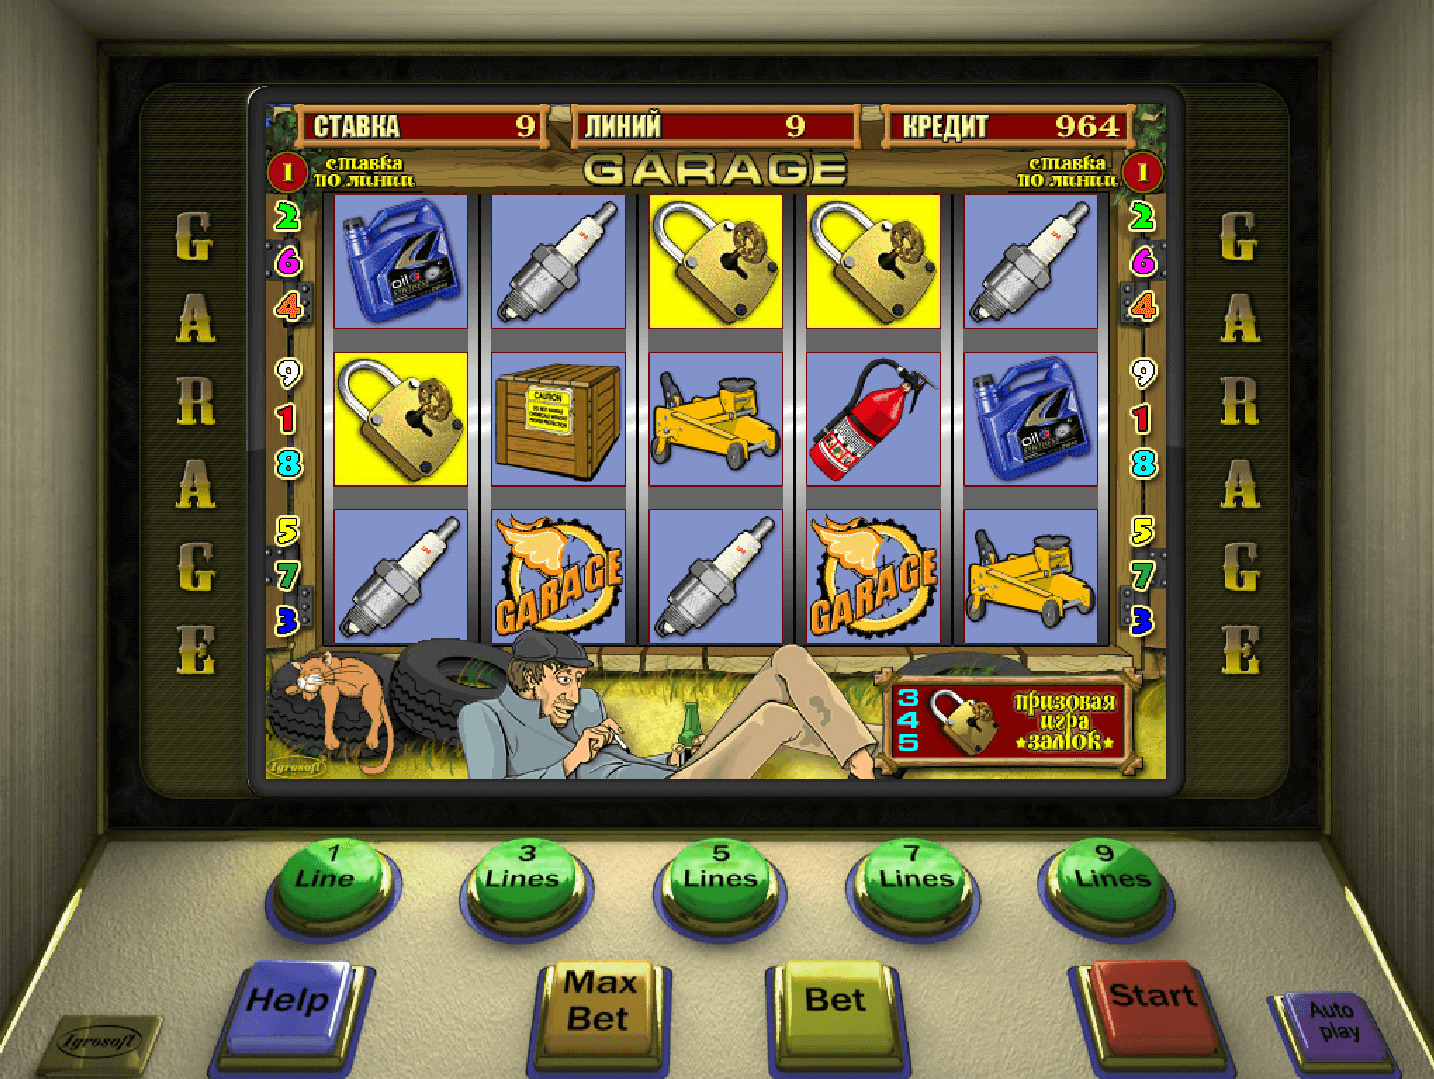 Казино онлайн игровые автоматы бесплатно без регистрации казино вулкан инфо играть онлайн бесплатно